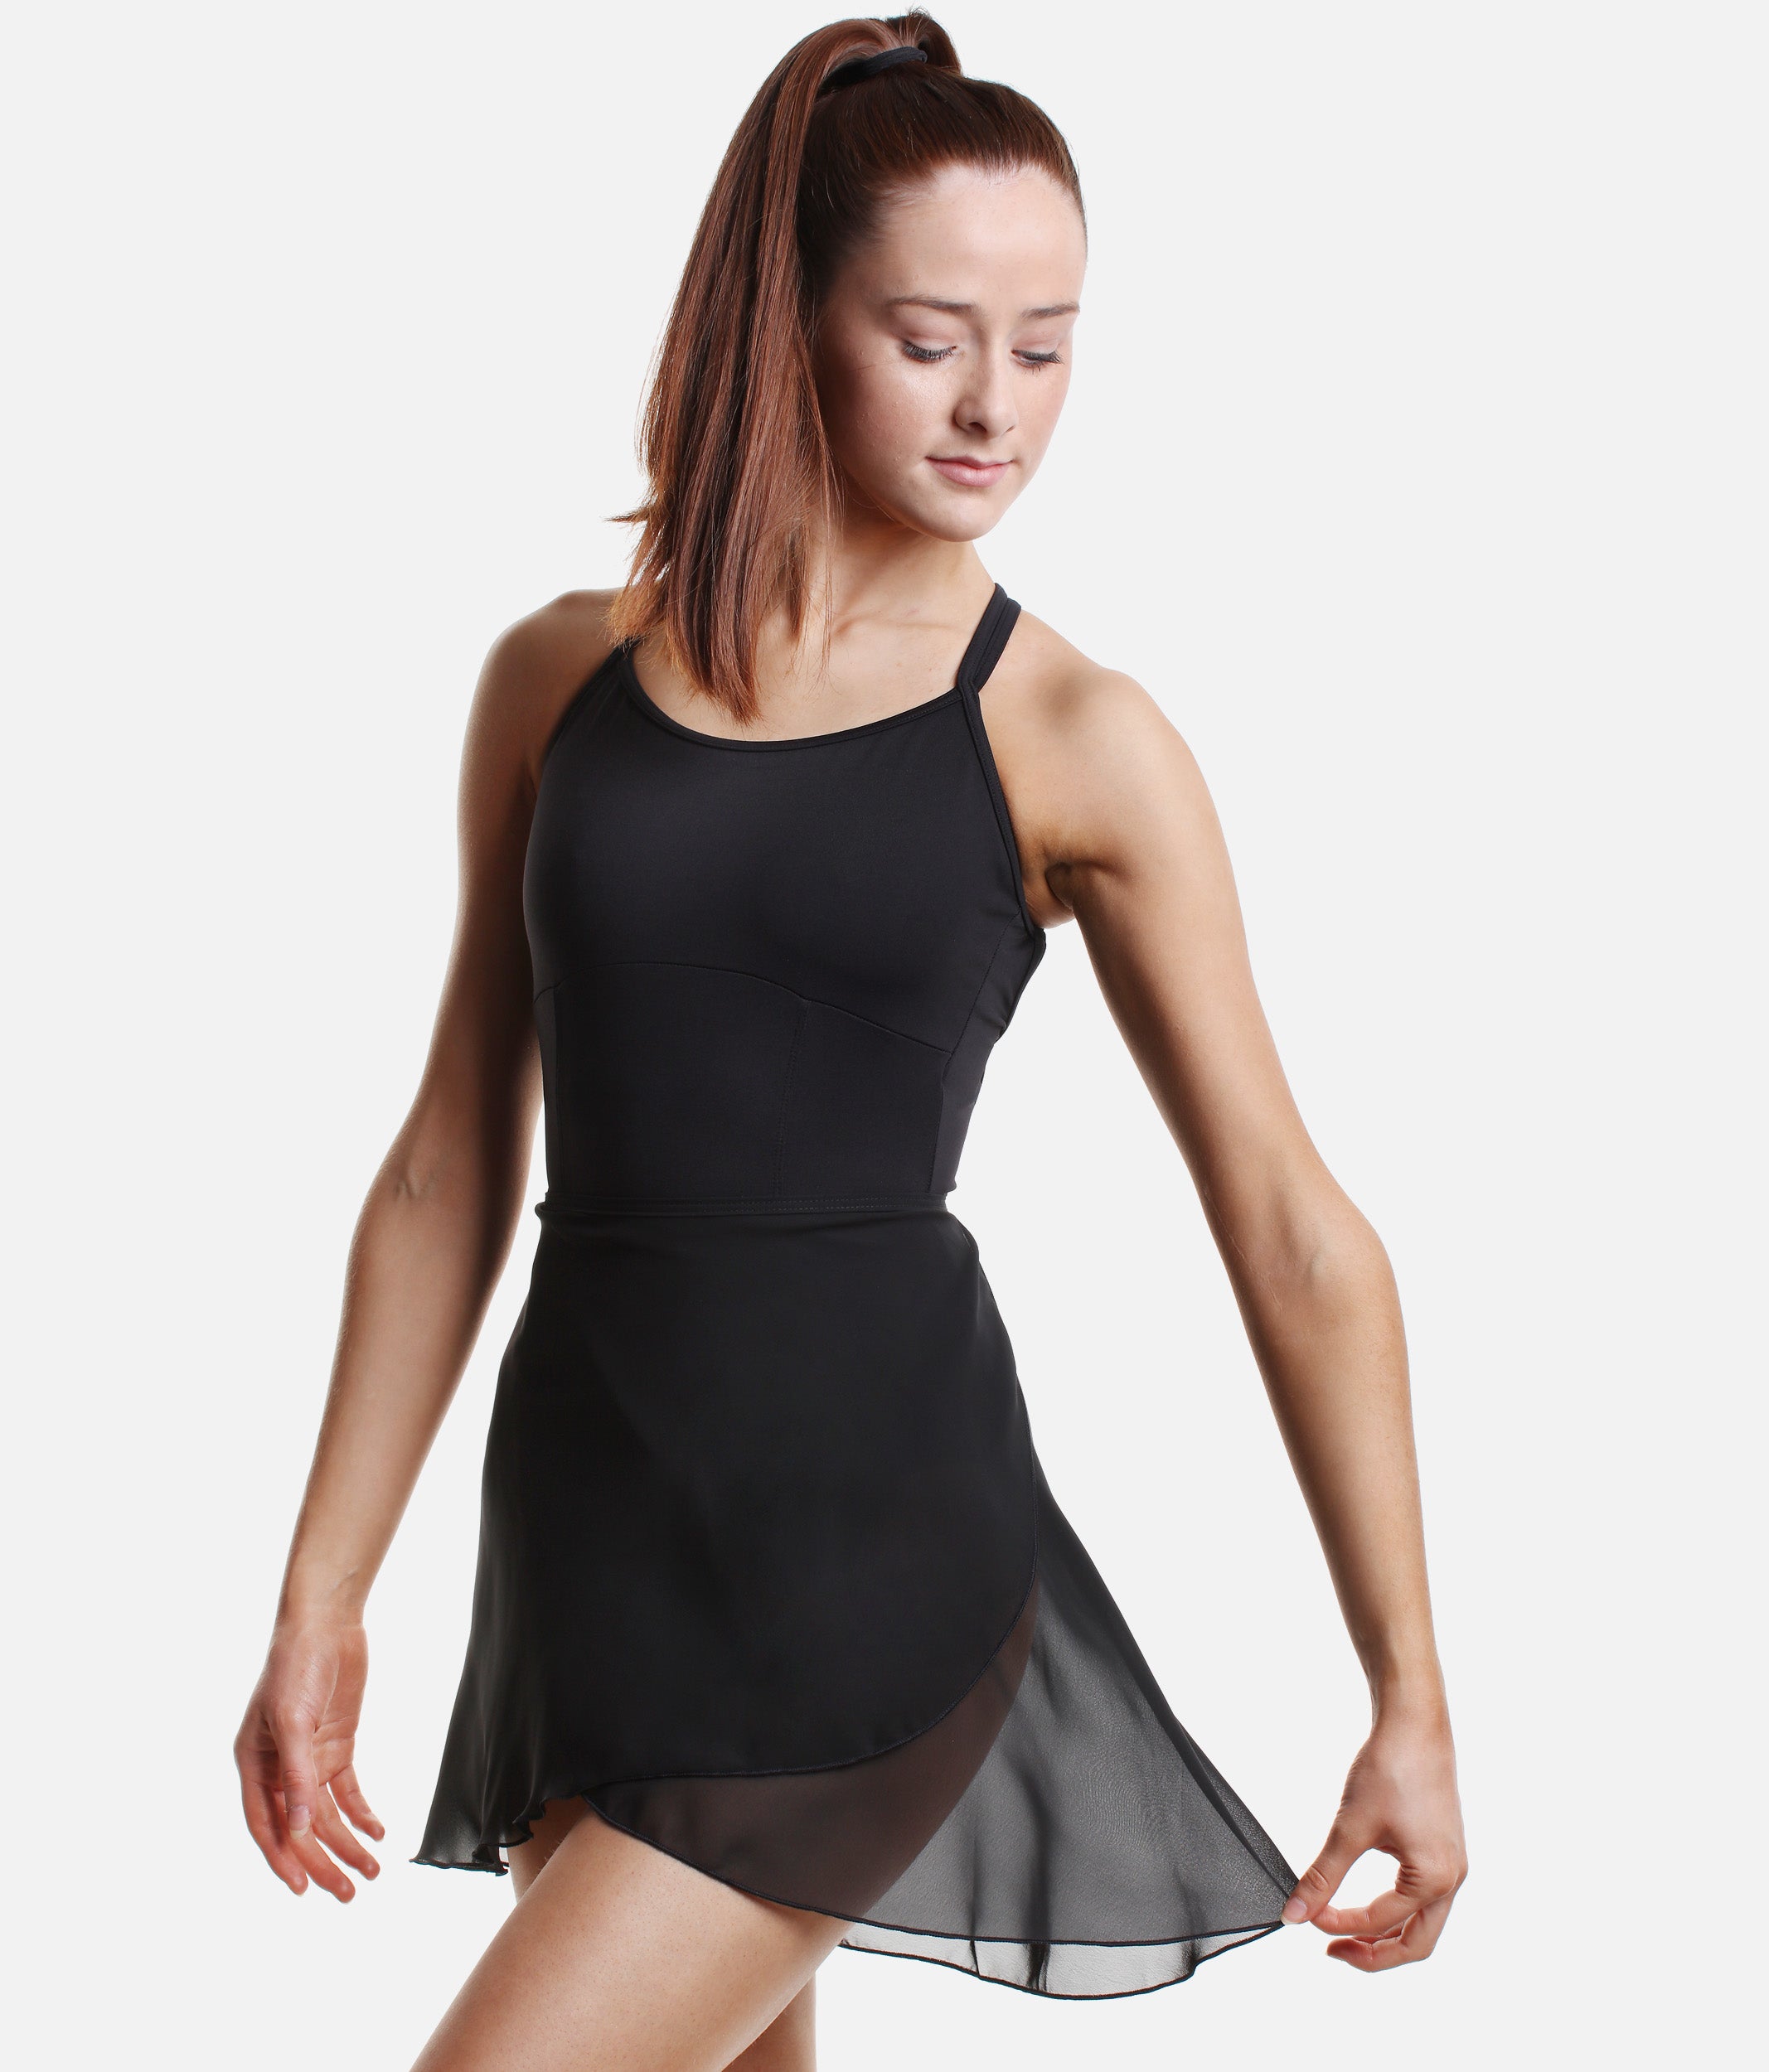 Wraparound Ballet Skirt - SL 60